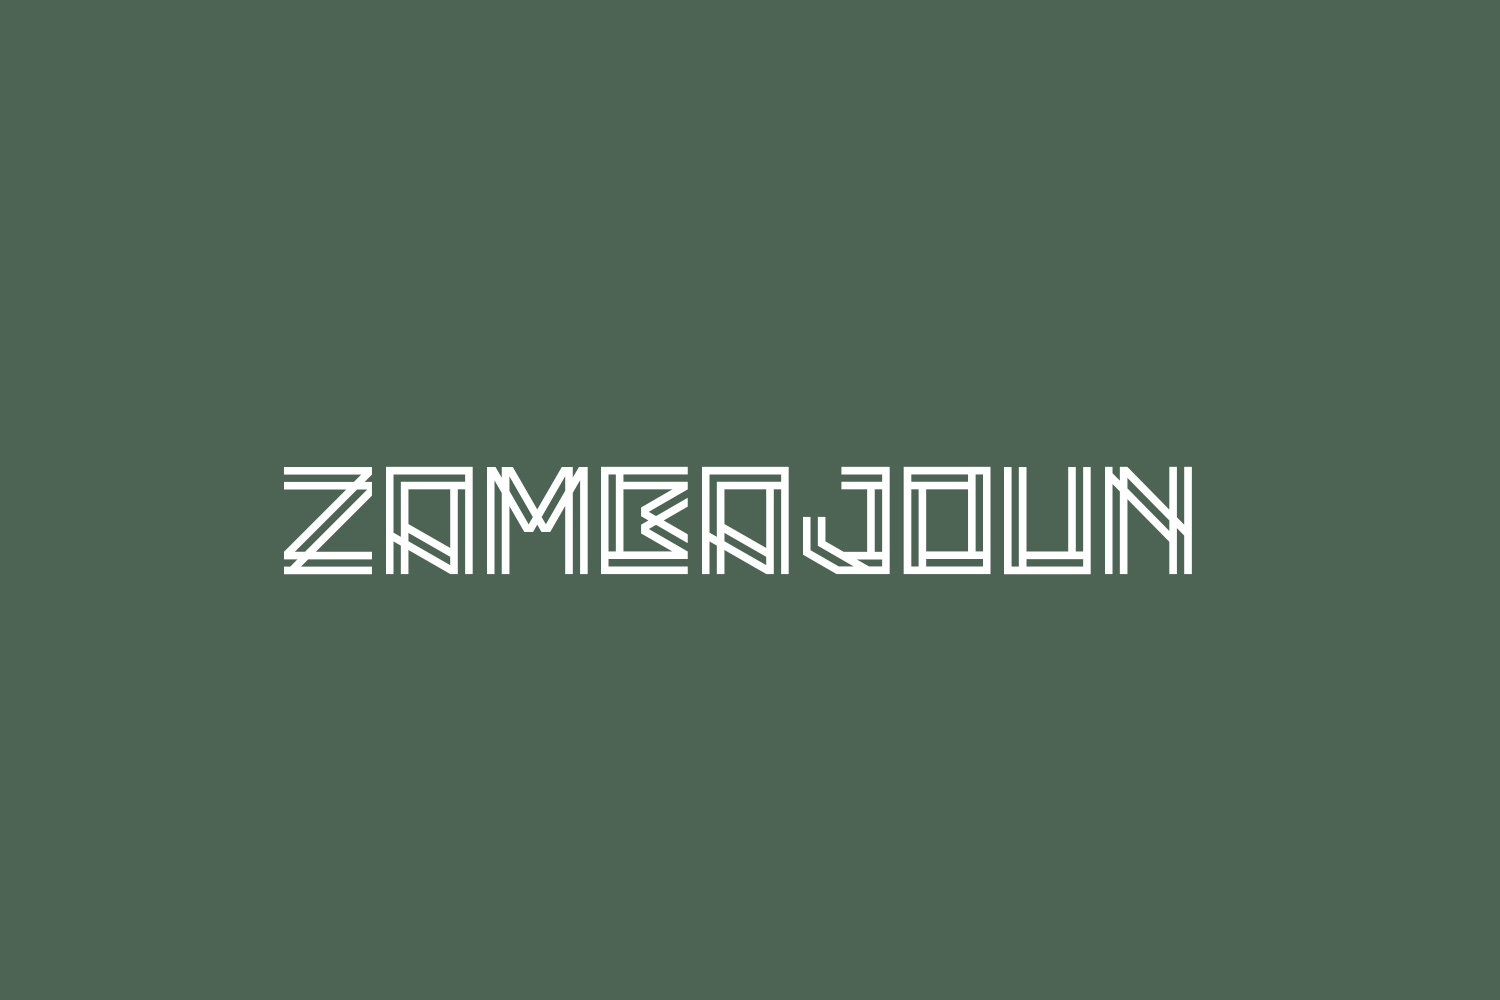 Zambajoun